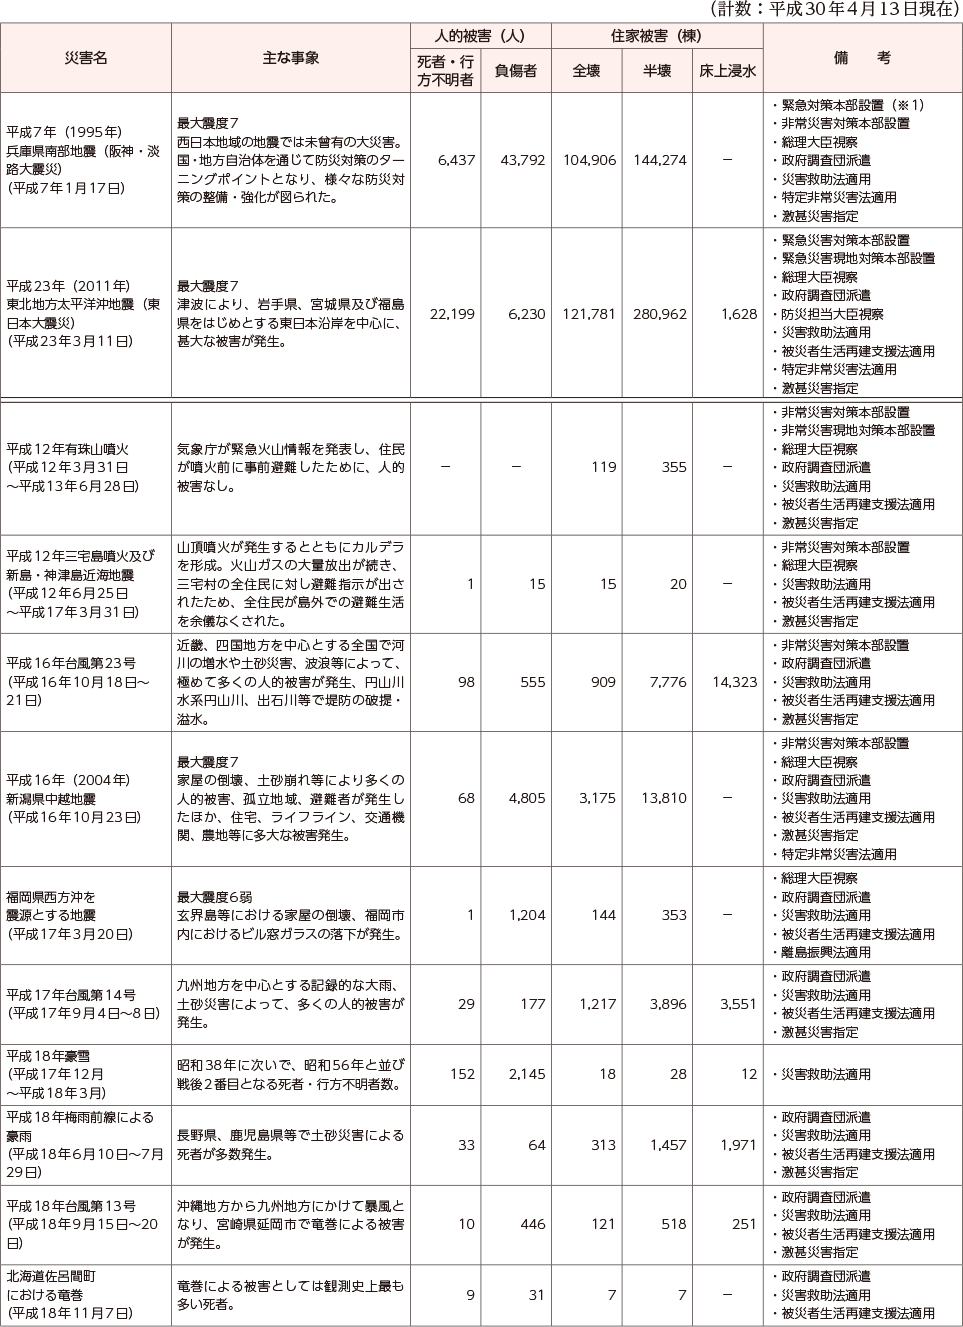 附属資料10　最近の主な自然災害について（阪神・淡路大震災以降）（1）